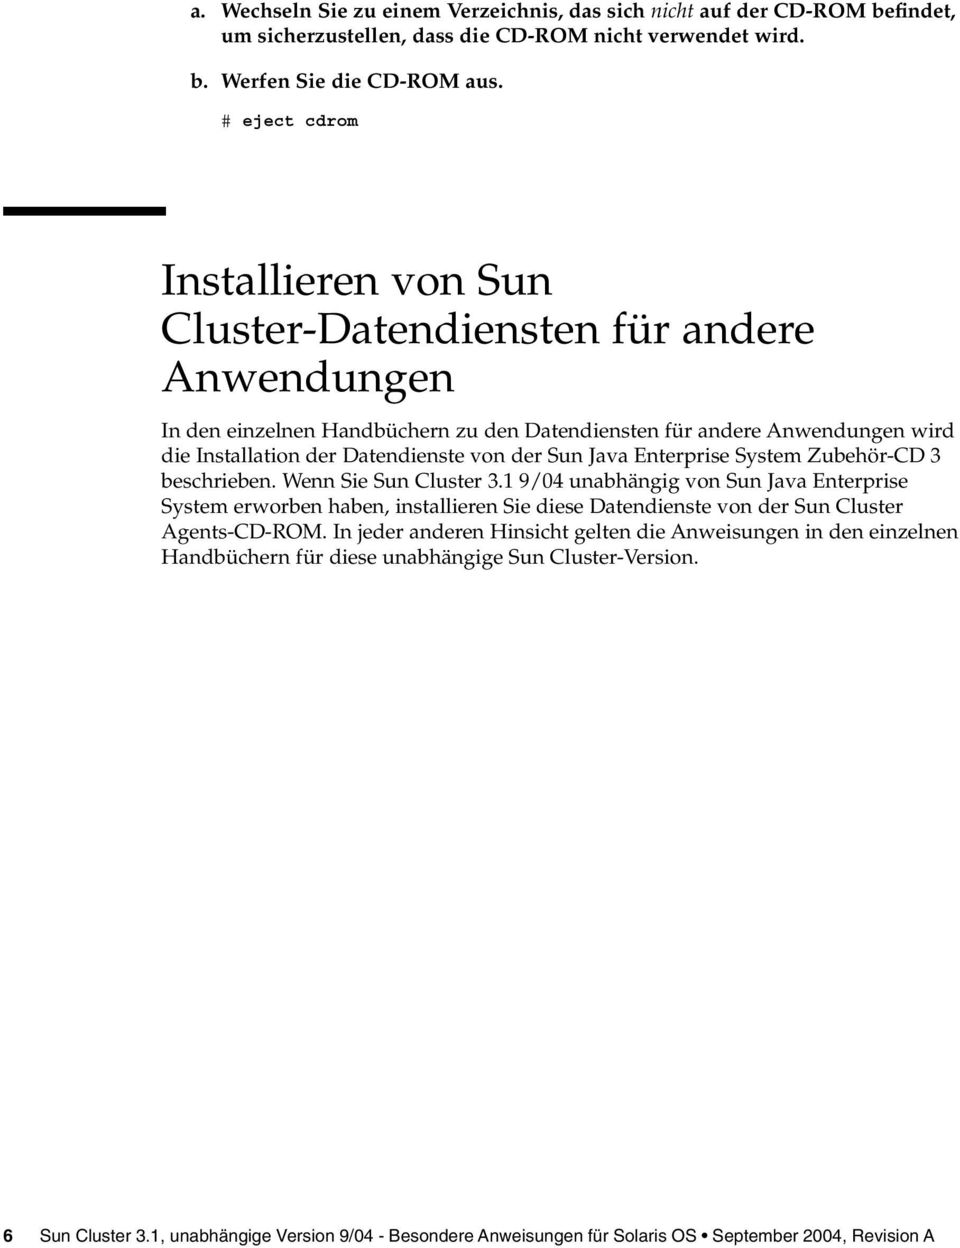 Sun Java Enterprise System Zubehör-CD 3 beschrieben. Wenn Sie Sun Cluster 3.